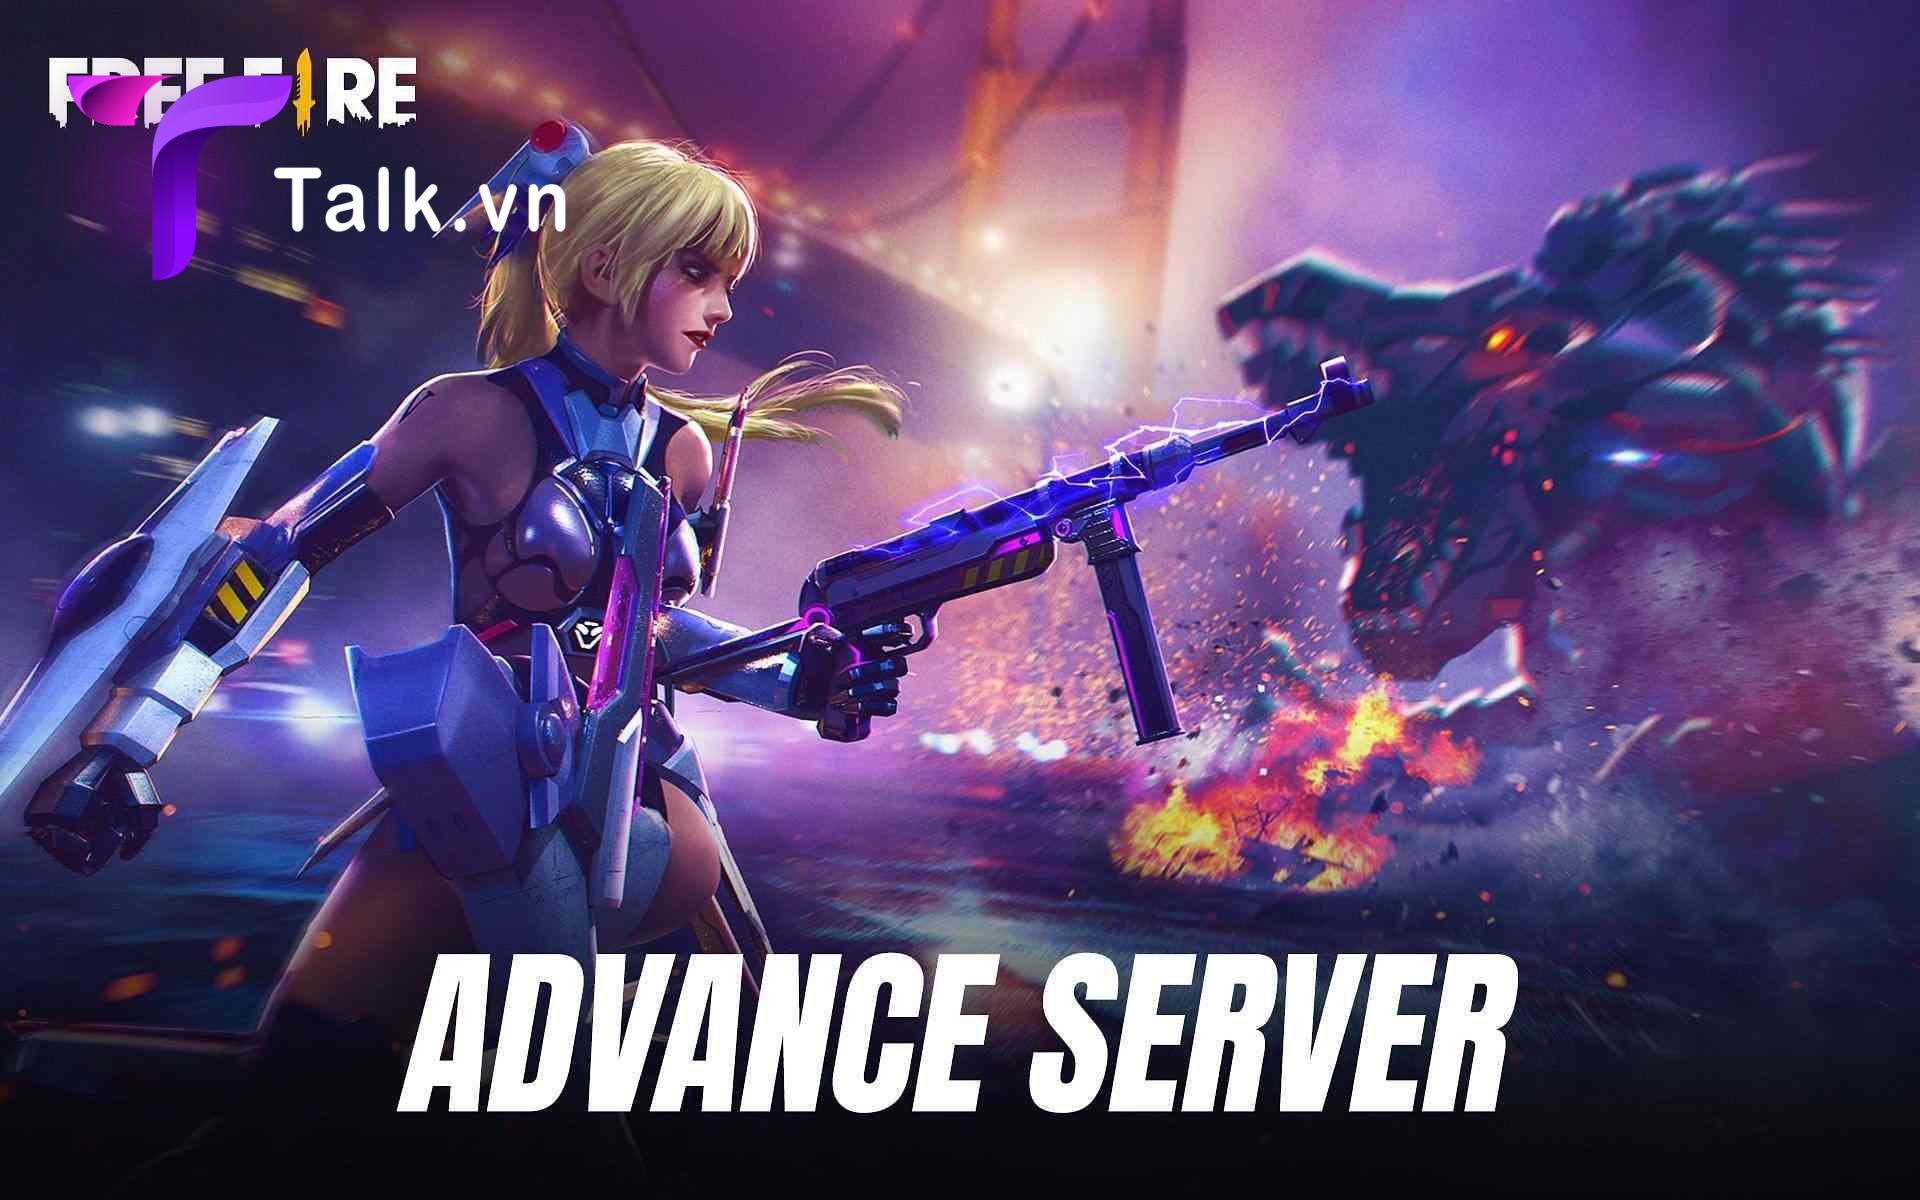 Free-Fire-Advance-Server-talk